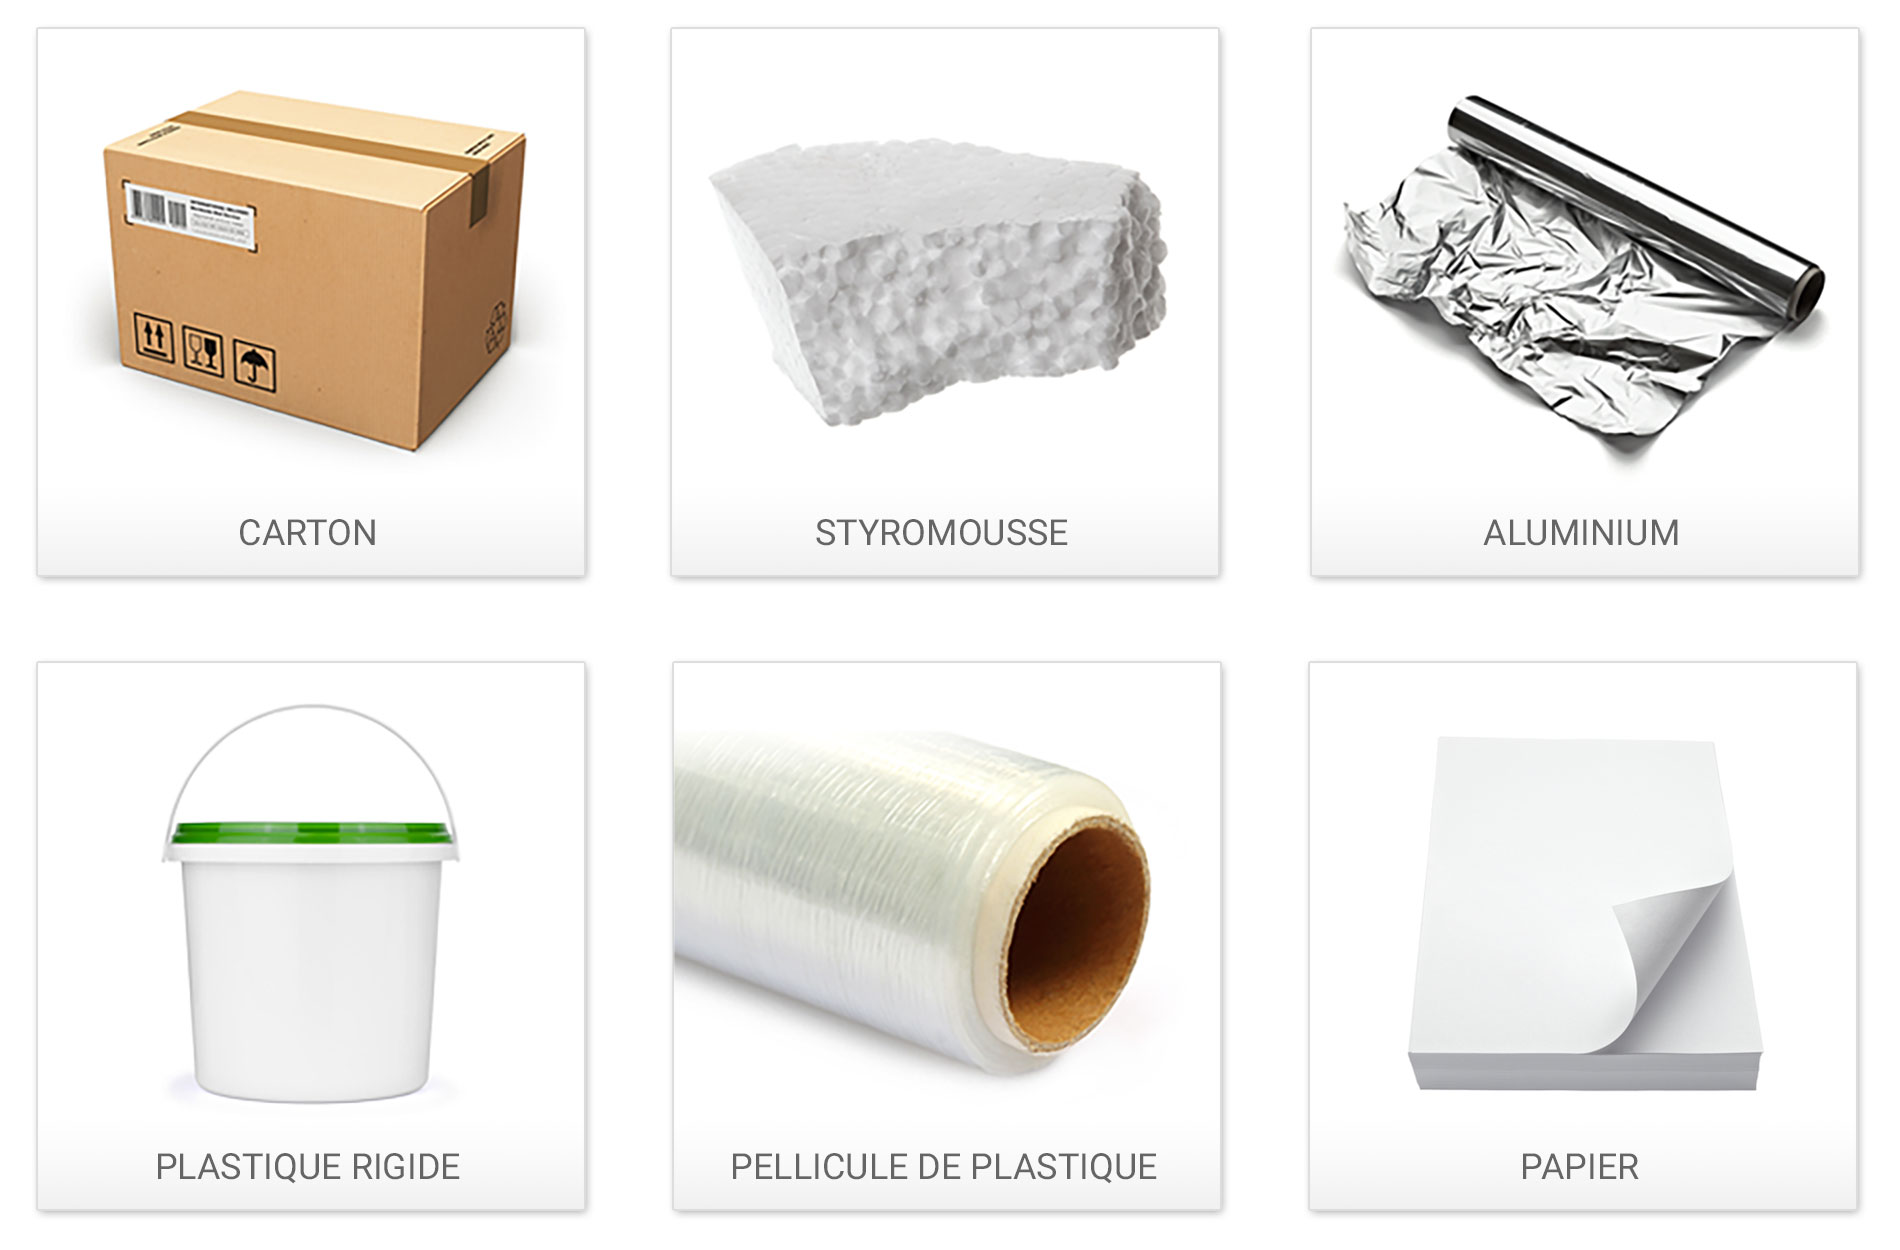 Matièes recyclables : carton, styromousse, aluminium, plastique rigide, pellicule de plastique et papier.